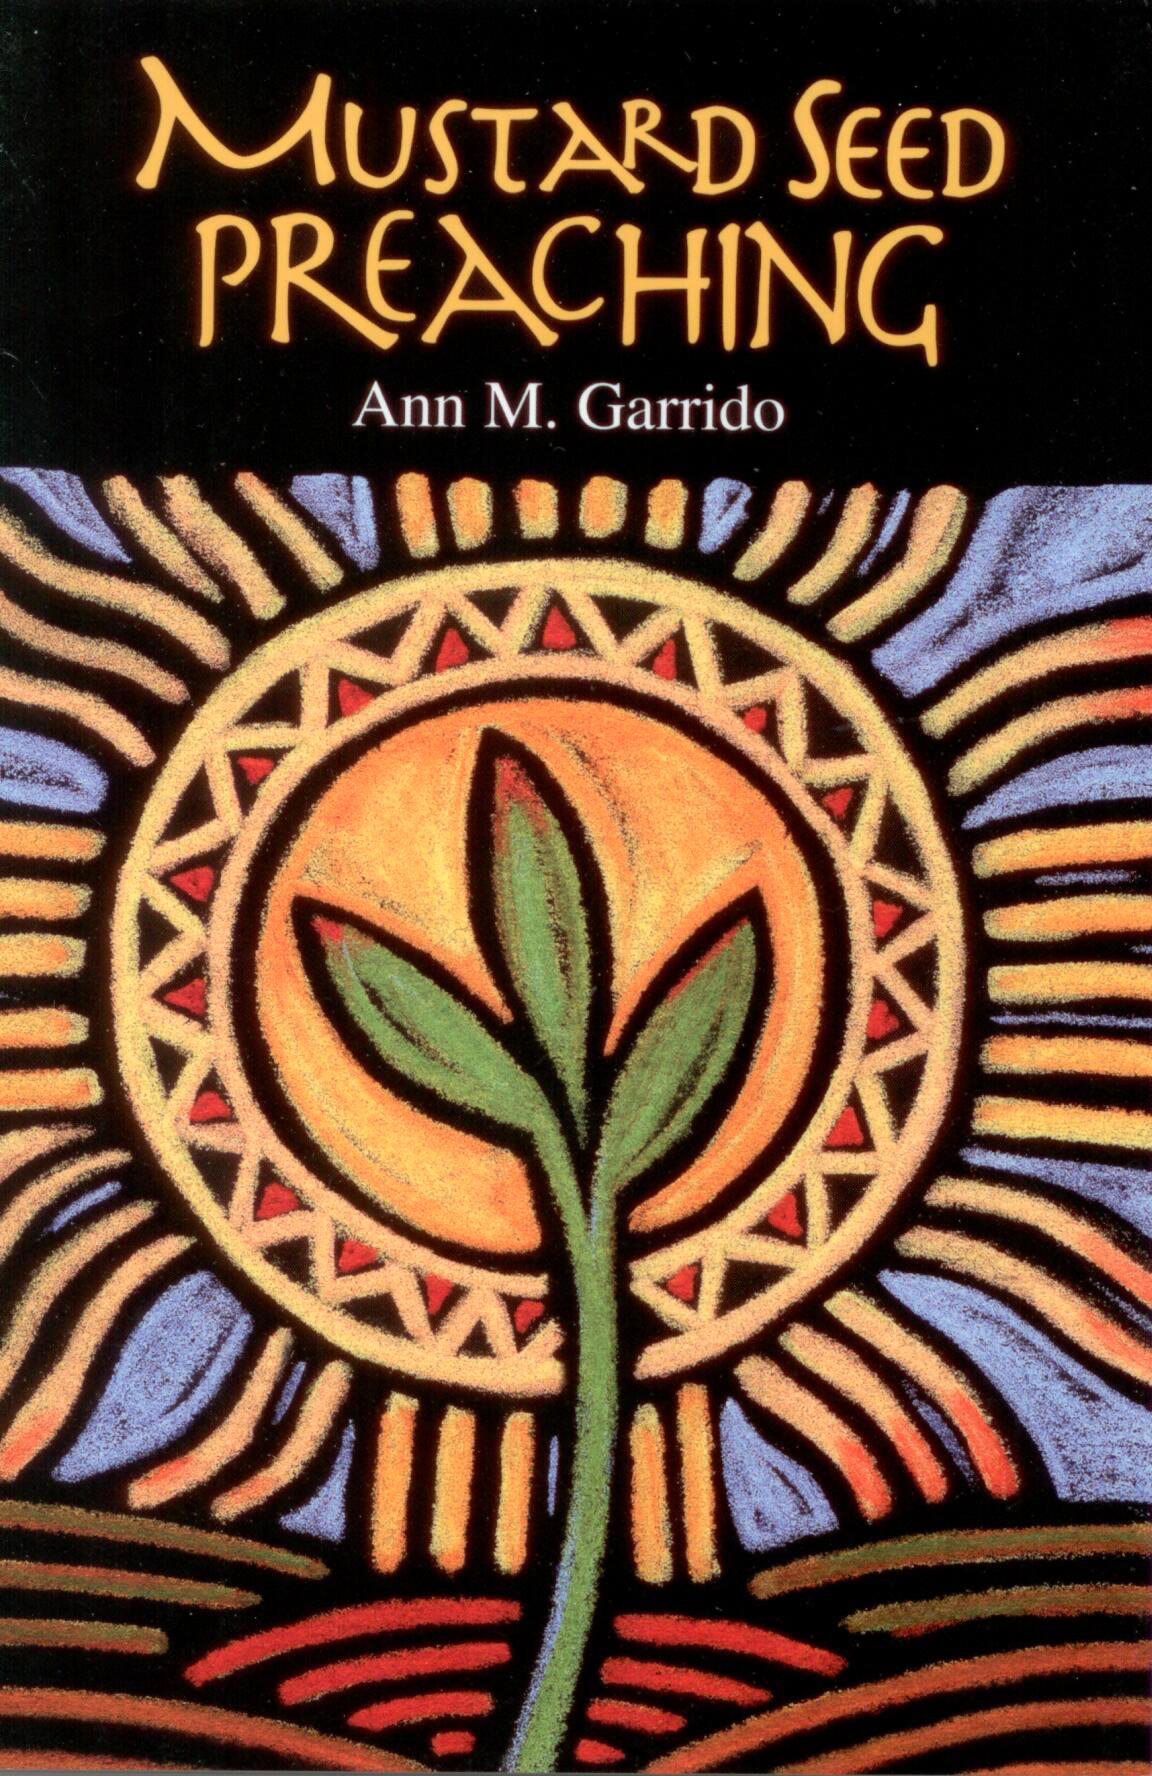 Mustard Seed Preaching by Ann M. Garrido